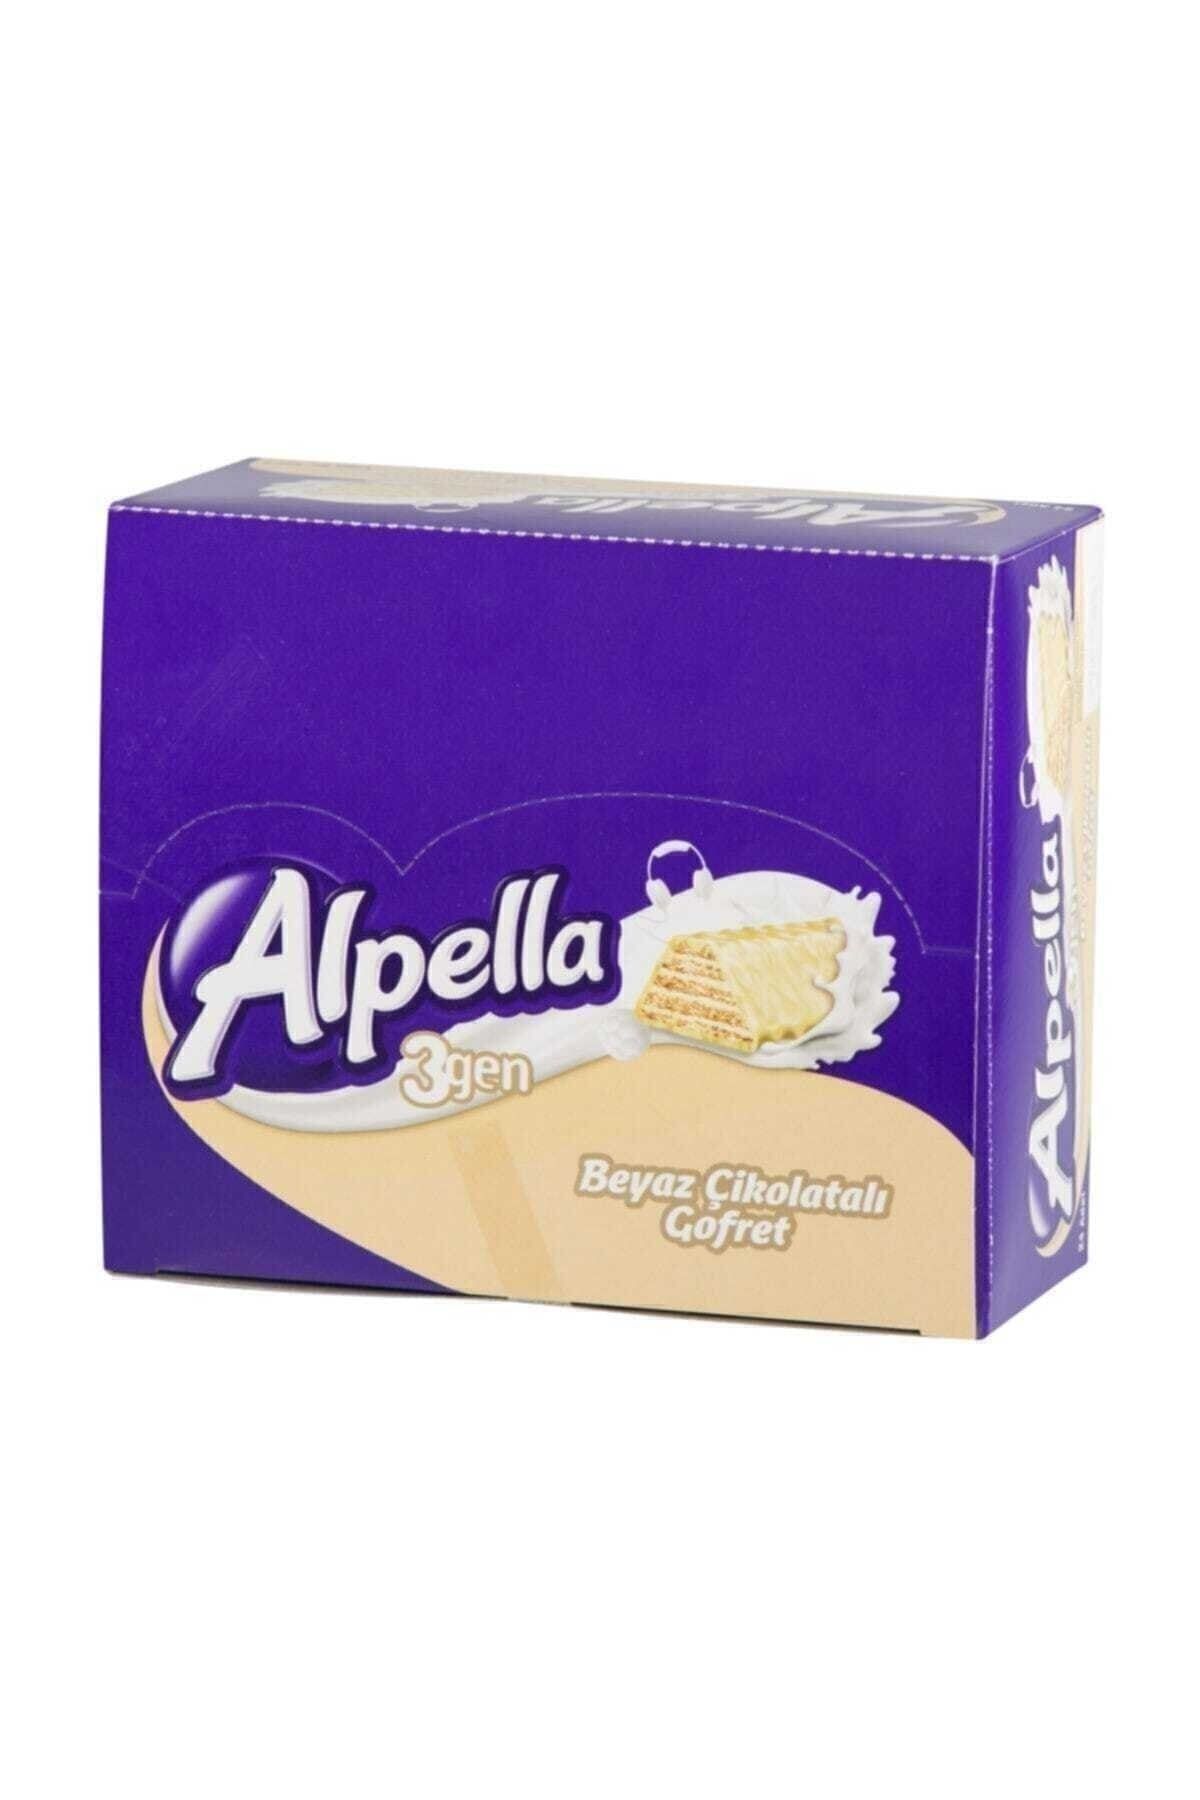 Alpella 3gen Beyaz Çikolatalı Gofret 24'lü